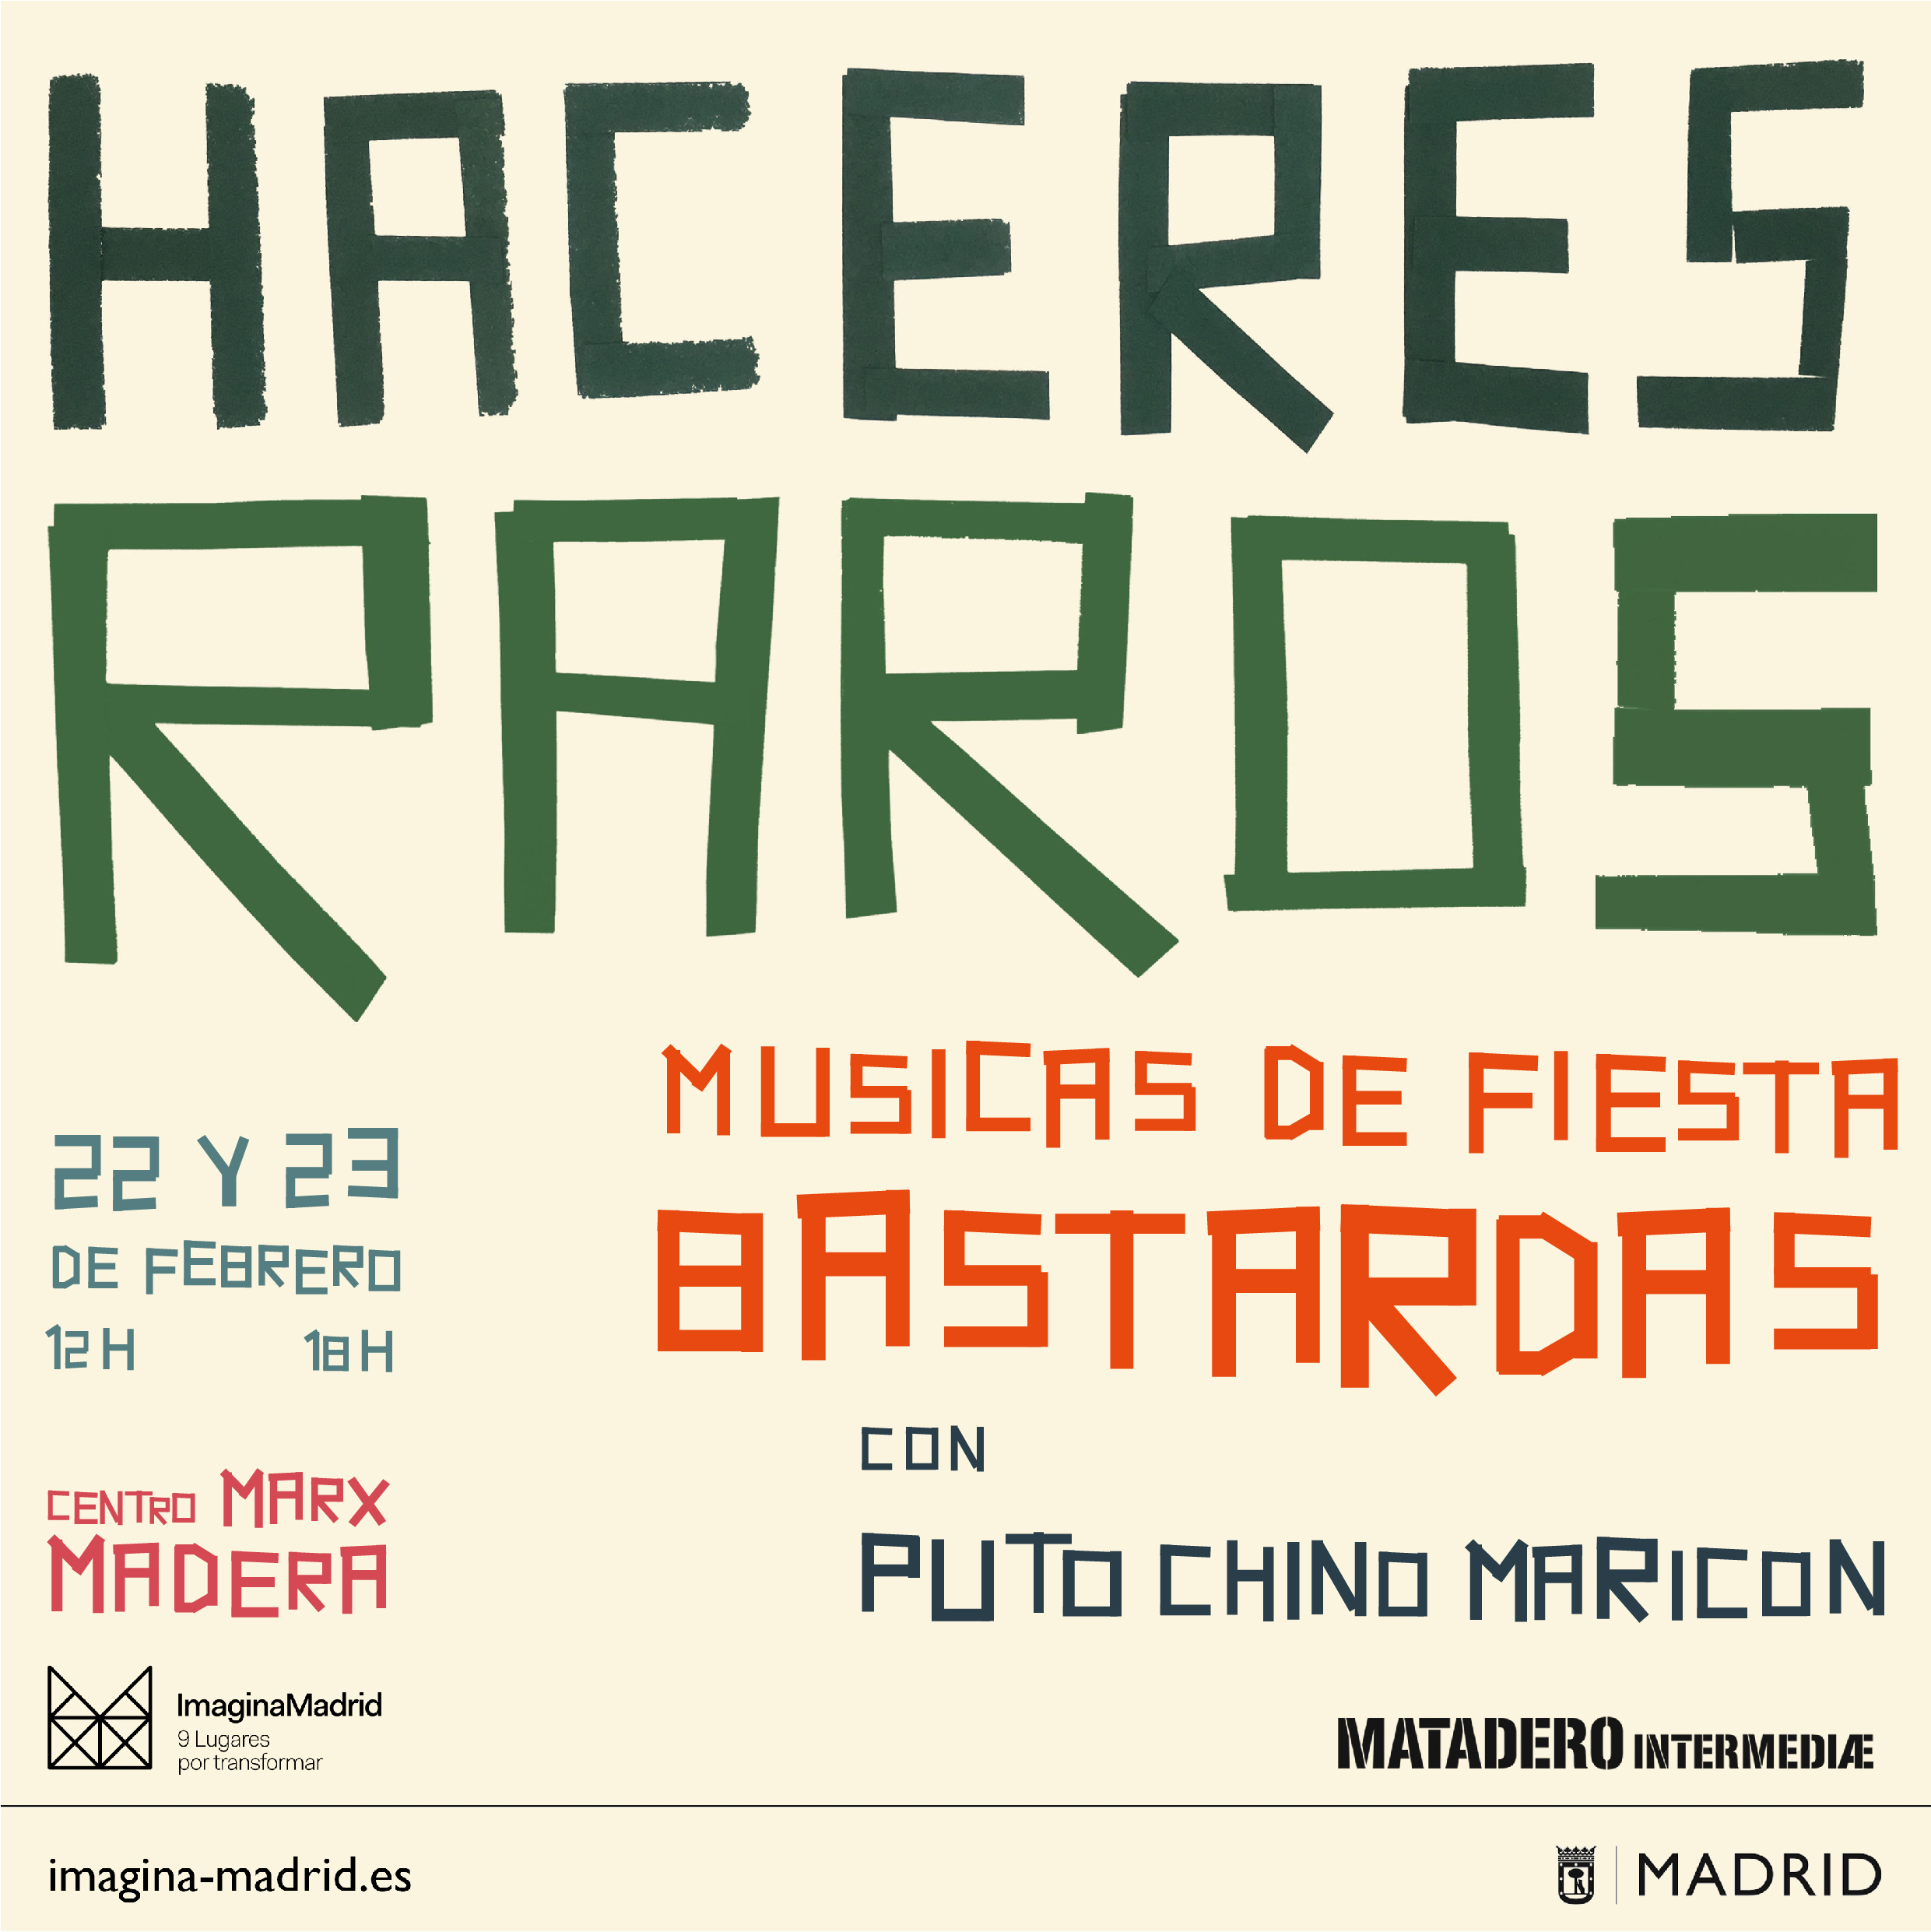 Taller Músicas de Fiesta Bastardas con Puto Chino Maricón